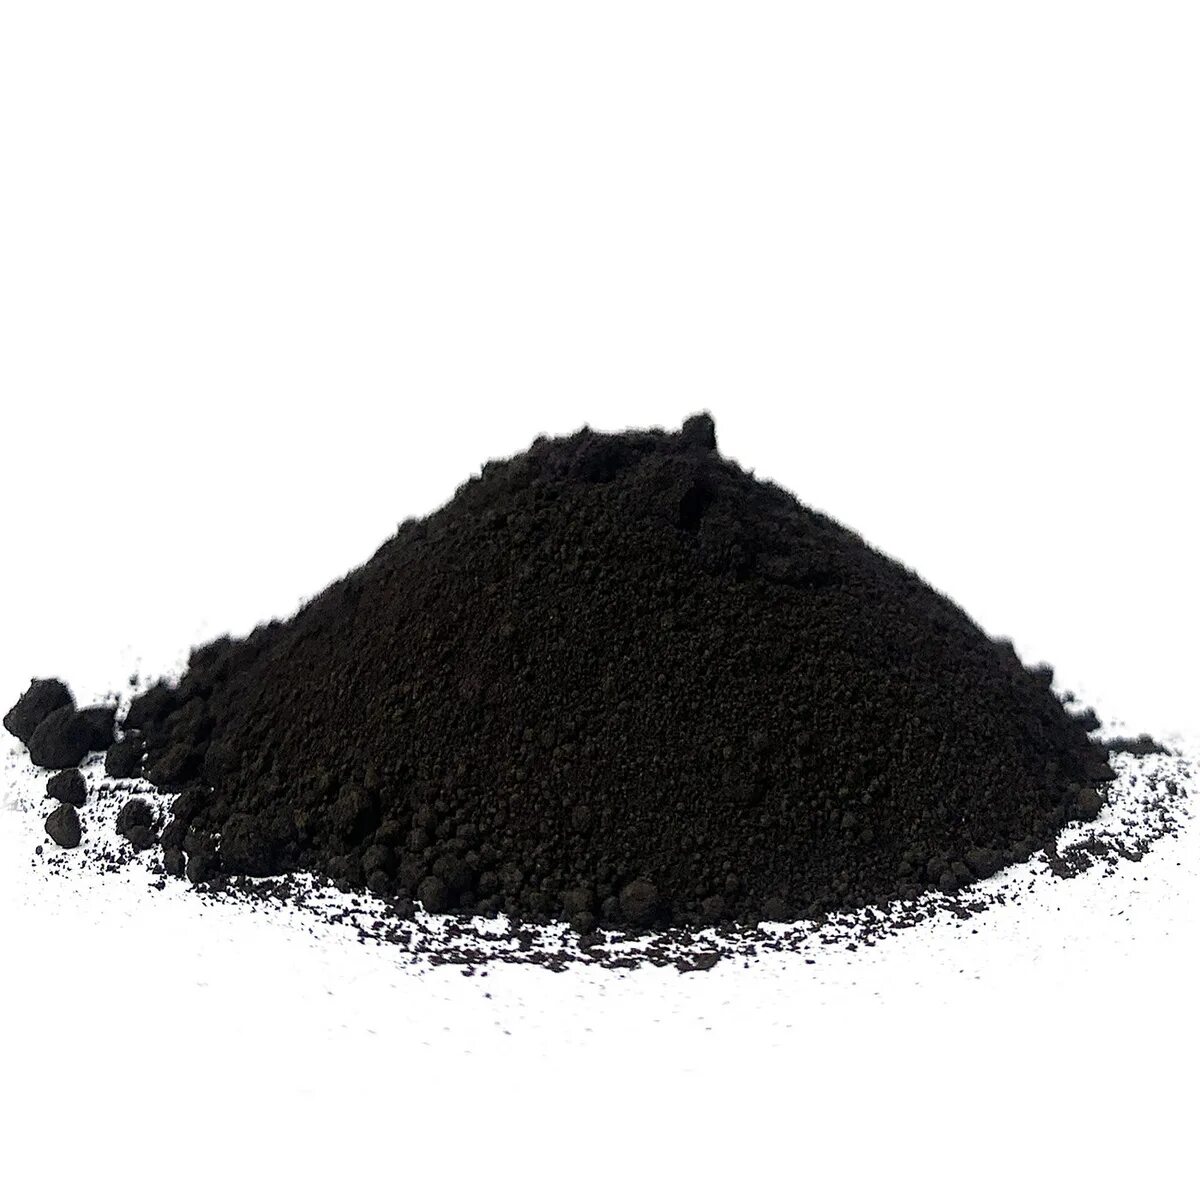 Сажа строительная купить. Пигмент Iron Oxide Black 722 черный. Tongchem пигмент. Черный пигмент Tongchem. Пигмент черный КНР 722 25 кг.